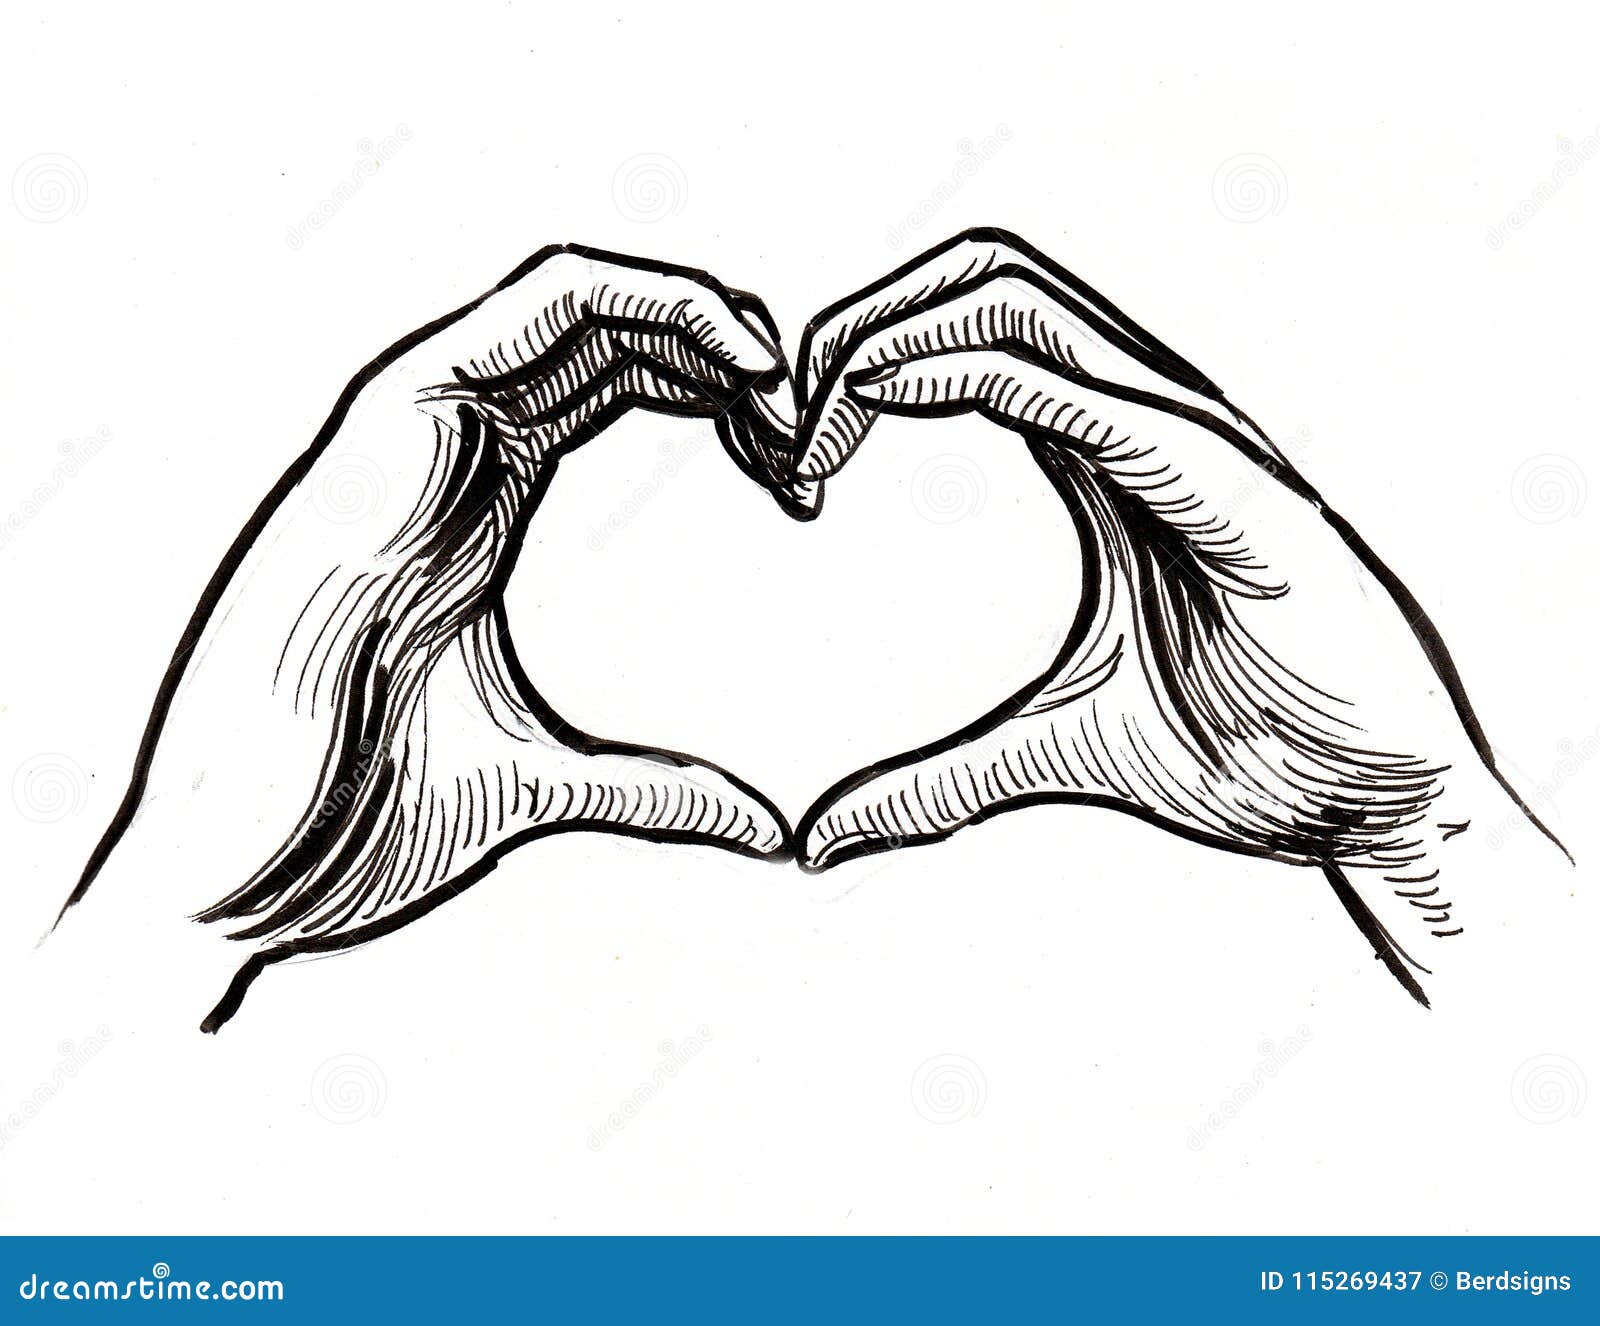 Иллюстрация форма сердце из рук